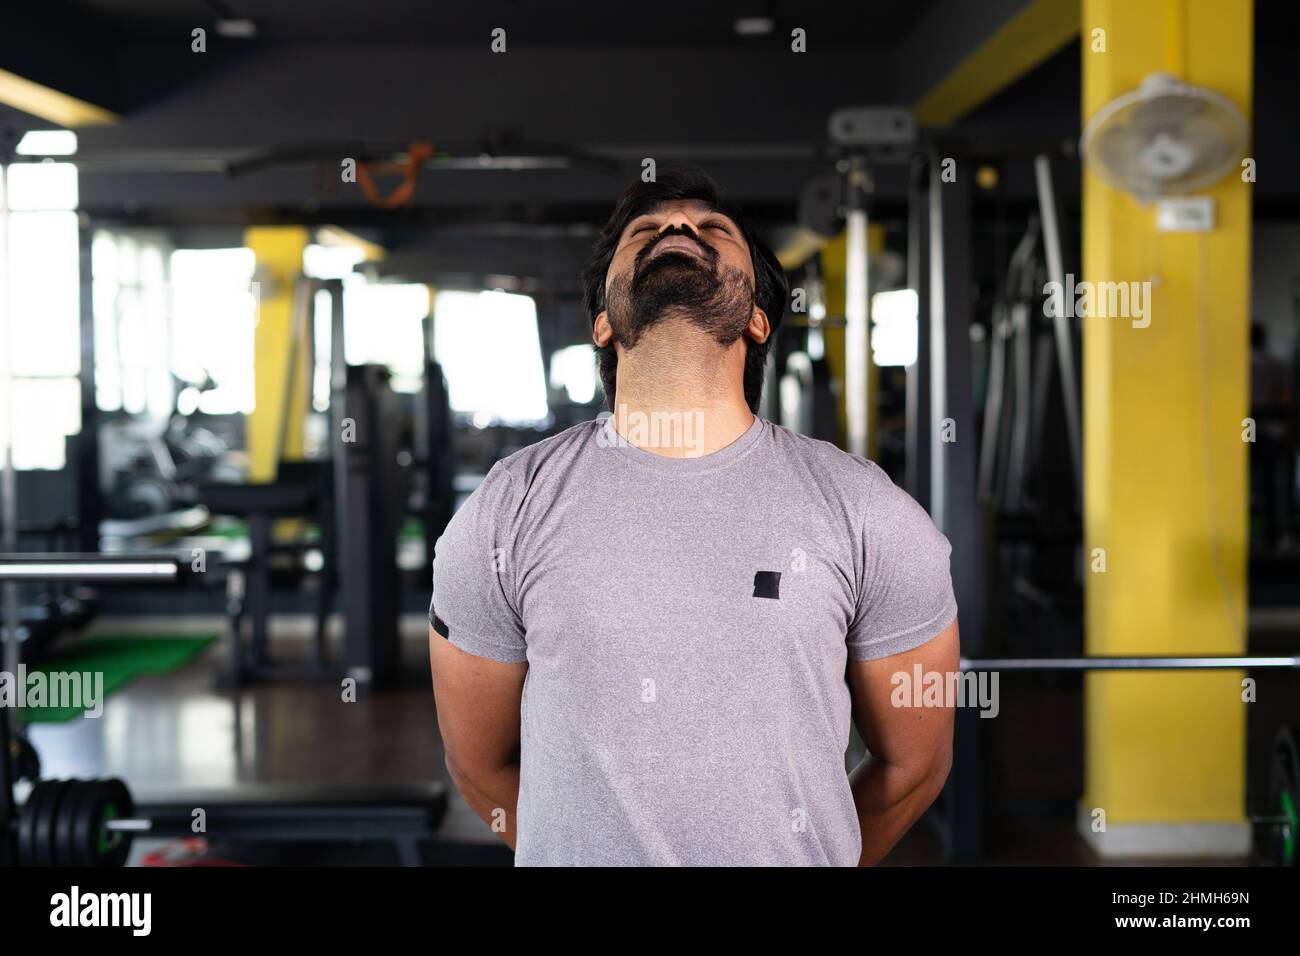 jeune homme occupé à faire la rotation du cou exercice d'échauffement à la salle de gym - concept de bien-être, style de vie sain et séance d'entraînement Banque D'Images